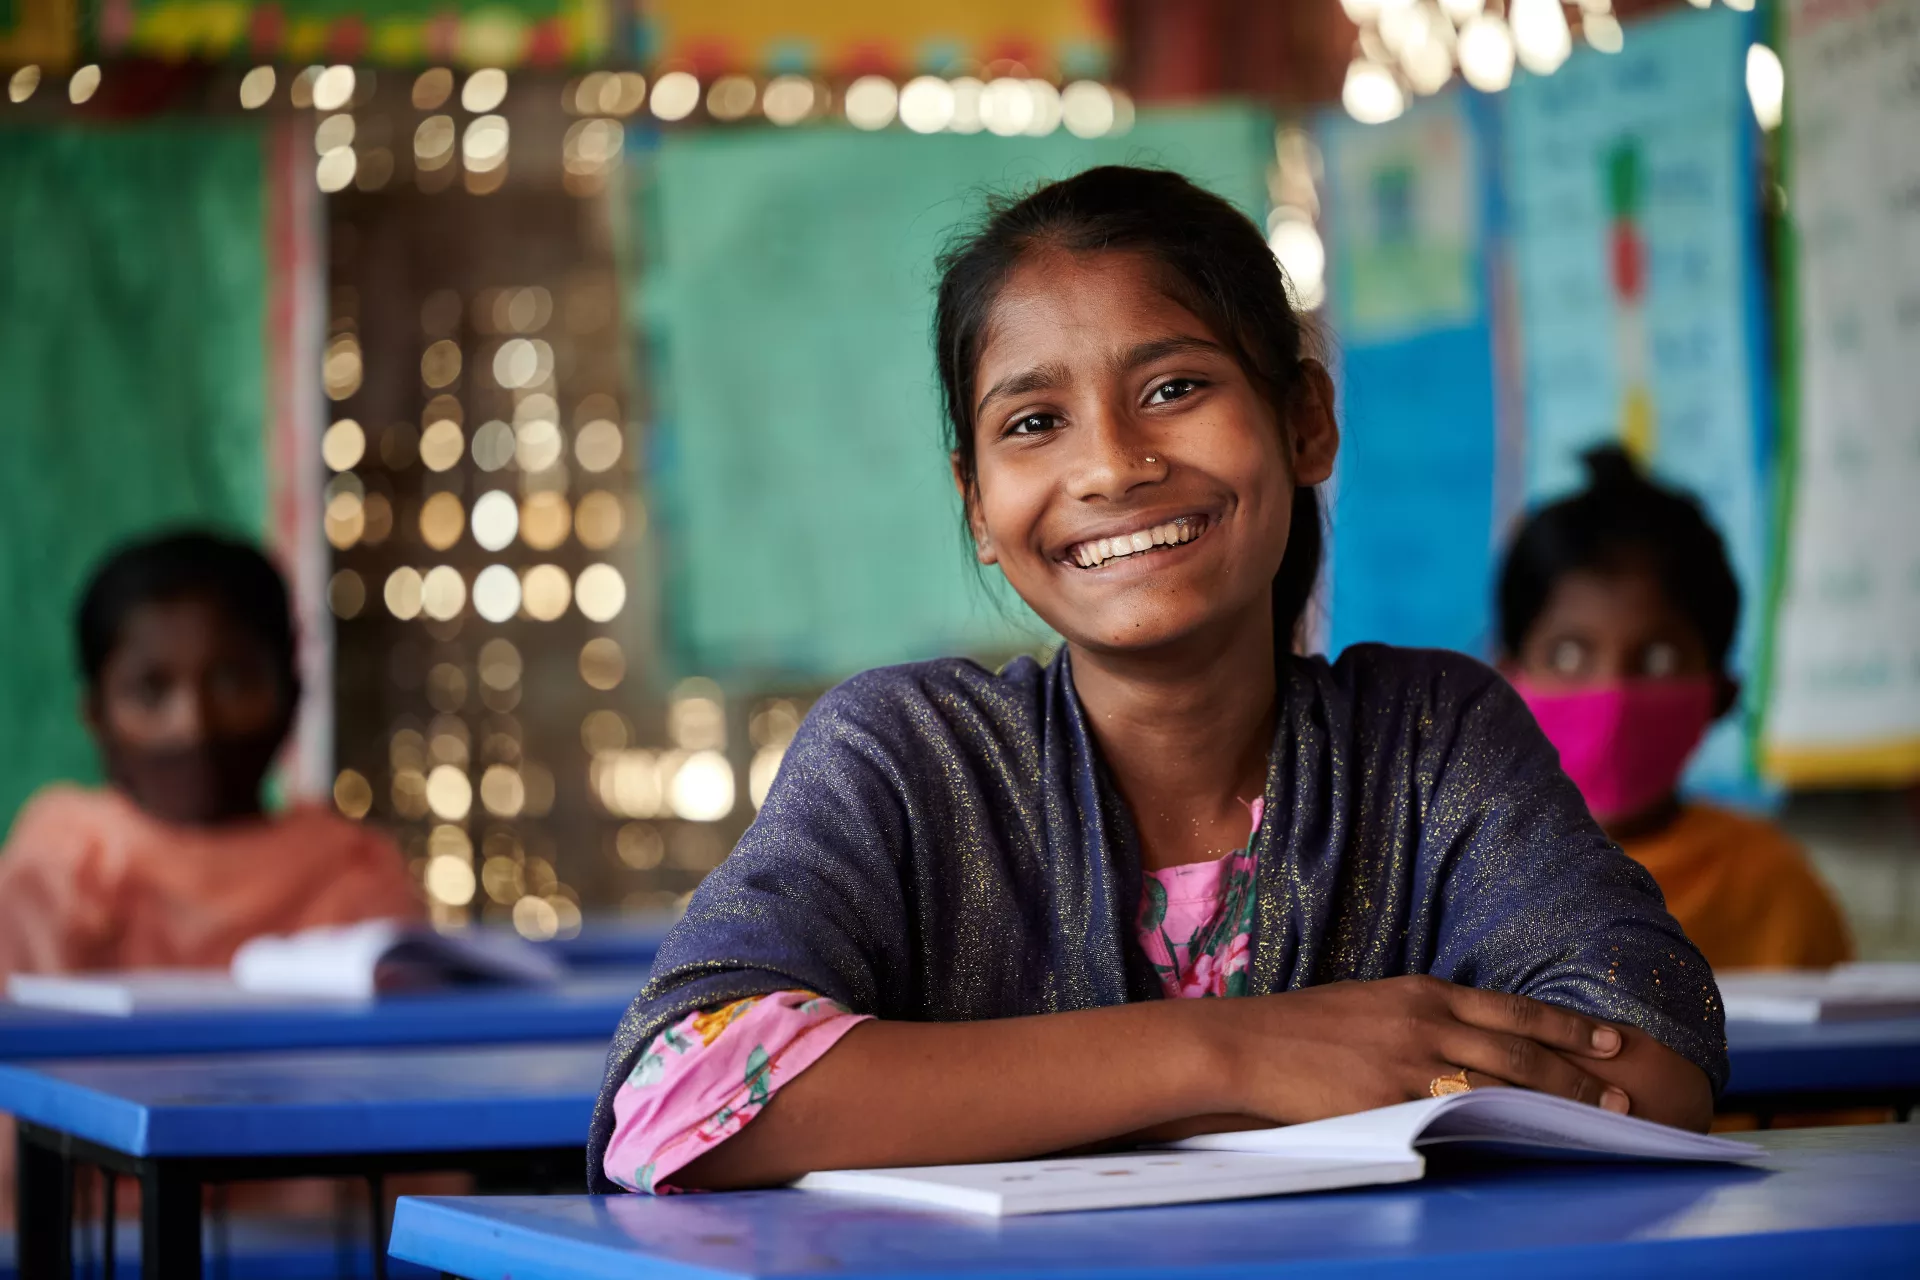 A happy Rohingya refugee girl 